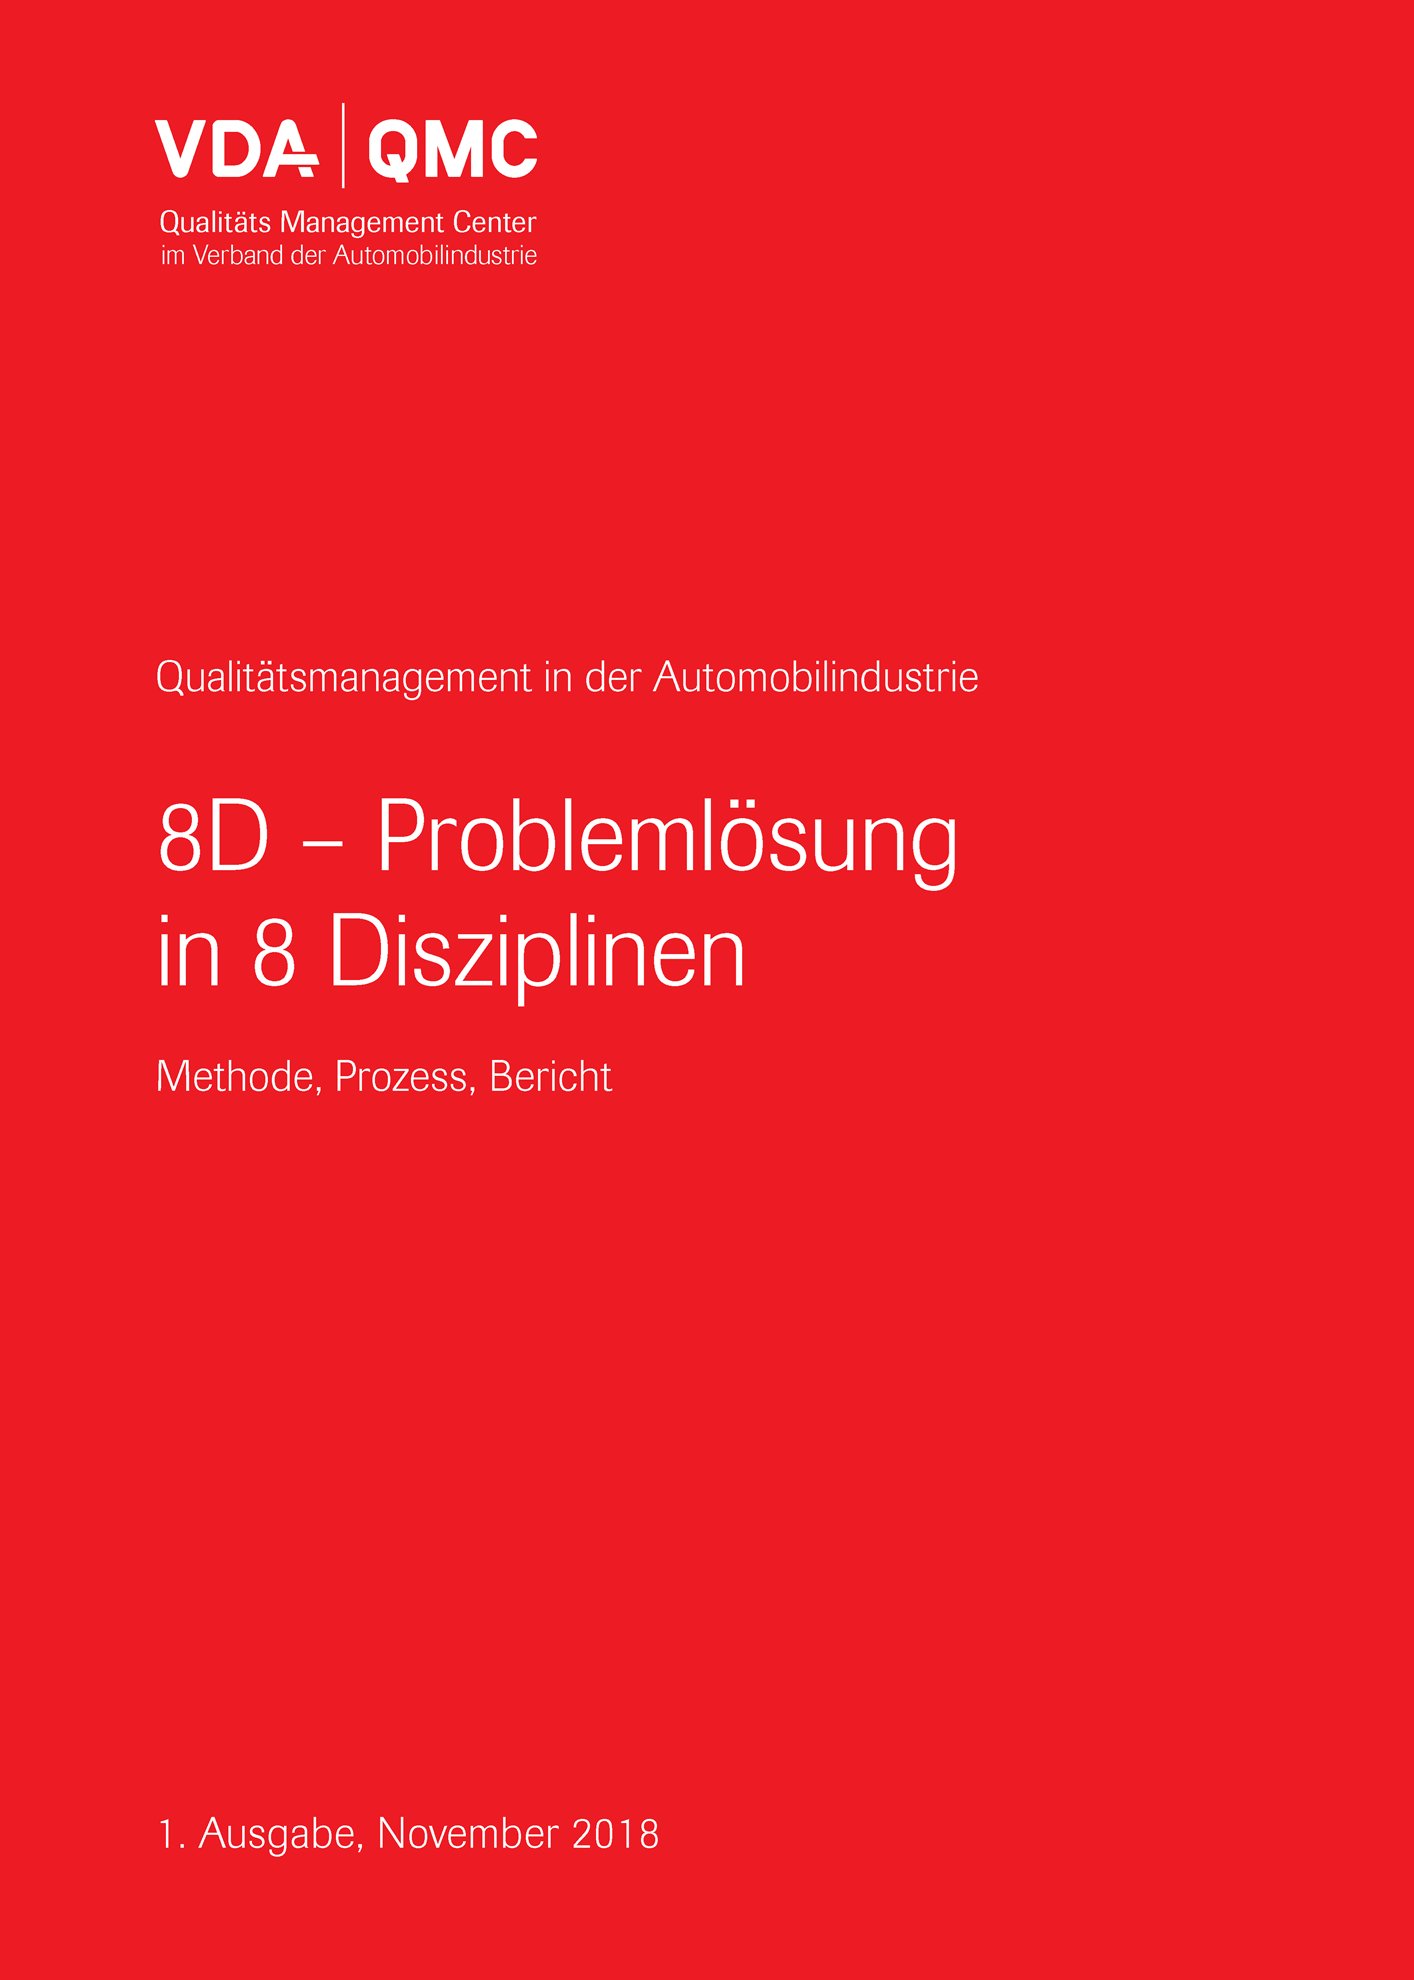 Náhľad  VDA 8D - Problemlösung in 8 Disziplinen
 Methode, Prozess, Bericht, 1. Ausgabe, November 2018 1.11.2018